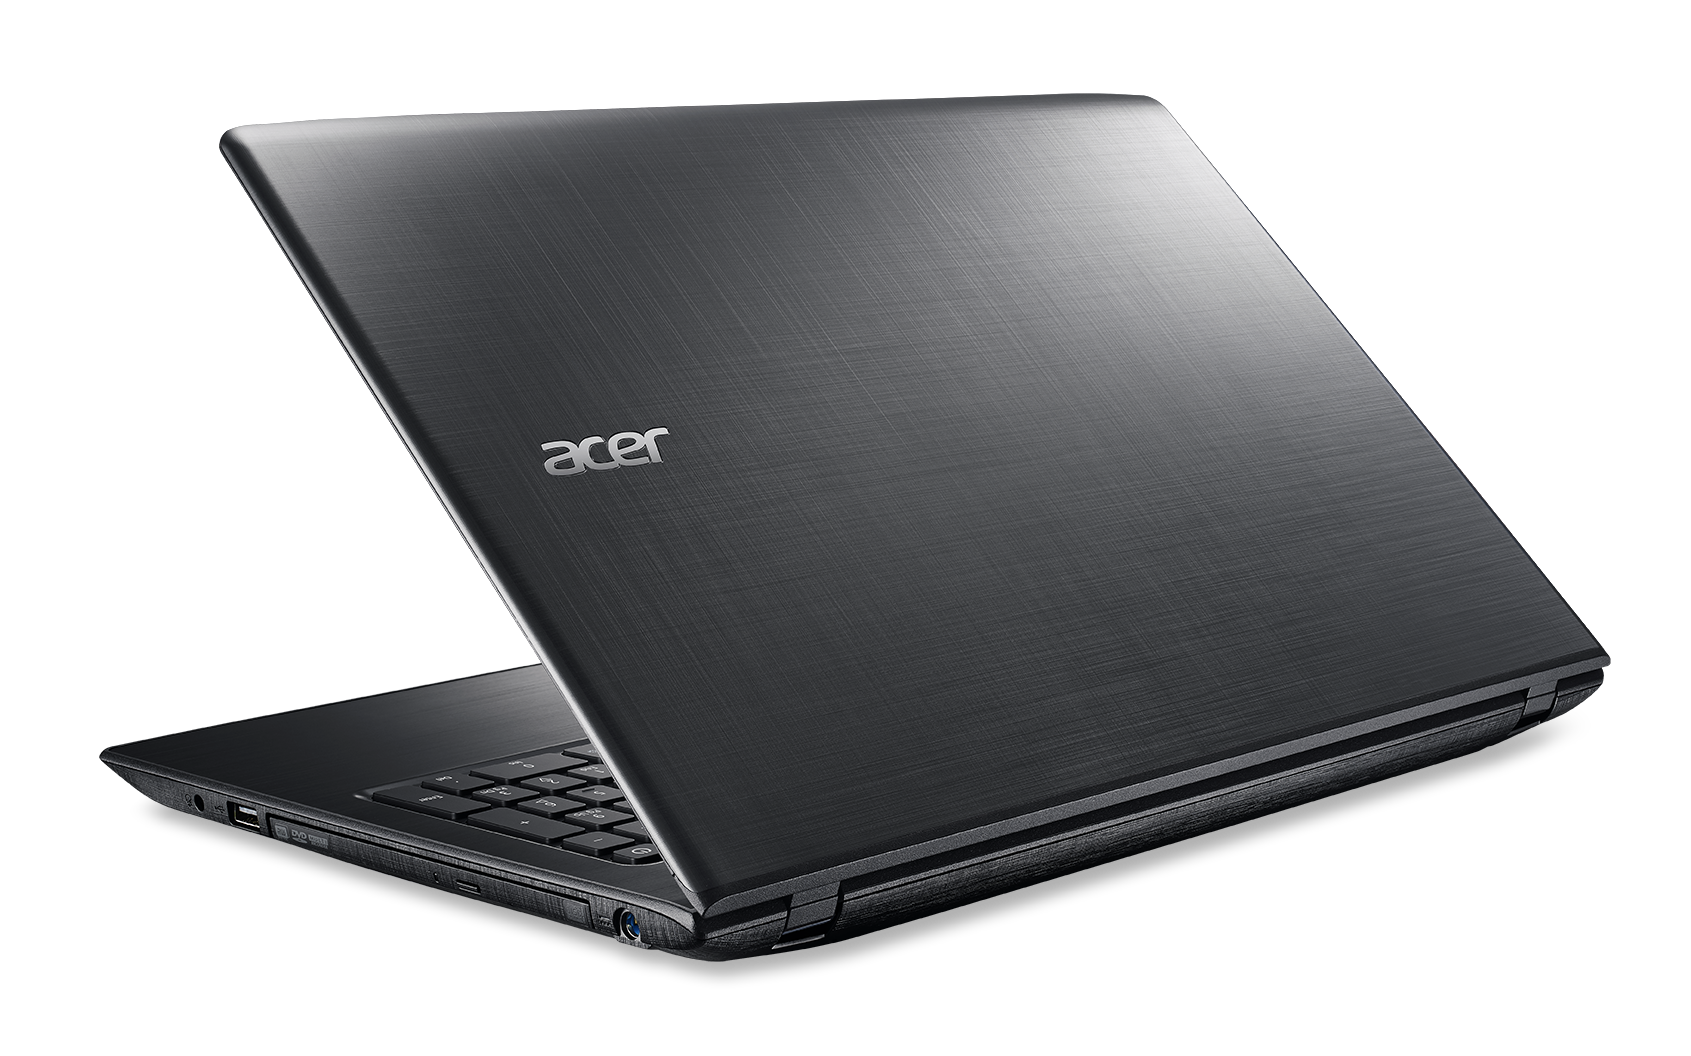 Đánh giá chi tiết Laptop Acer E5 576G